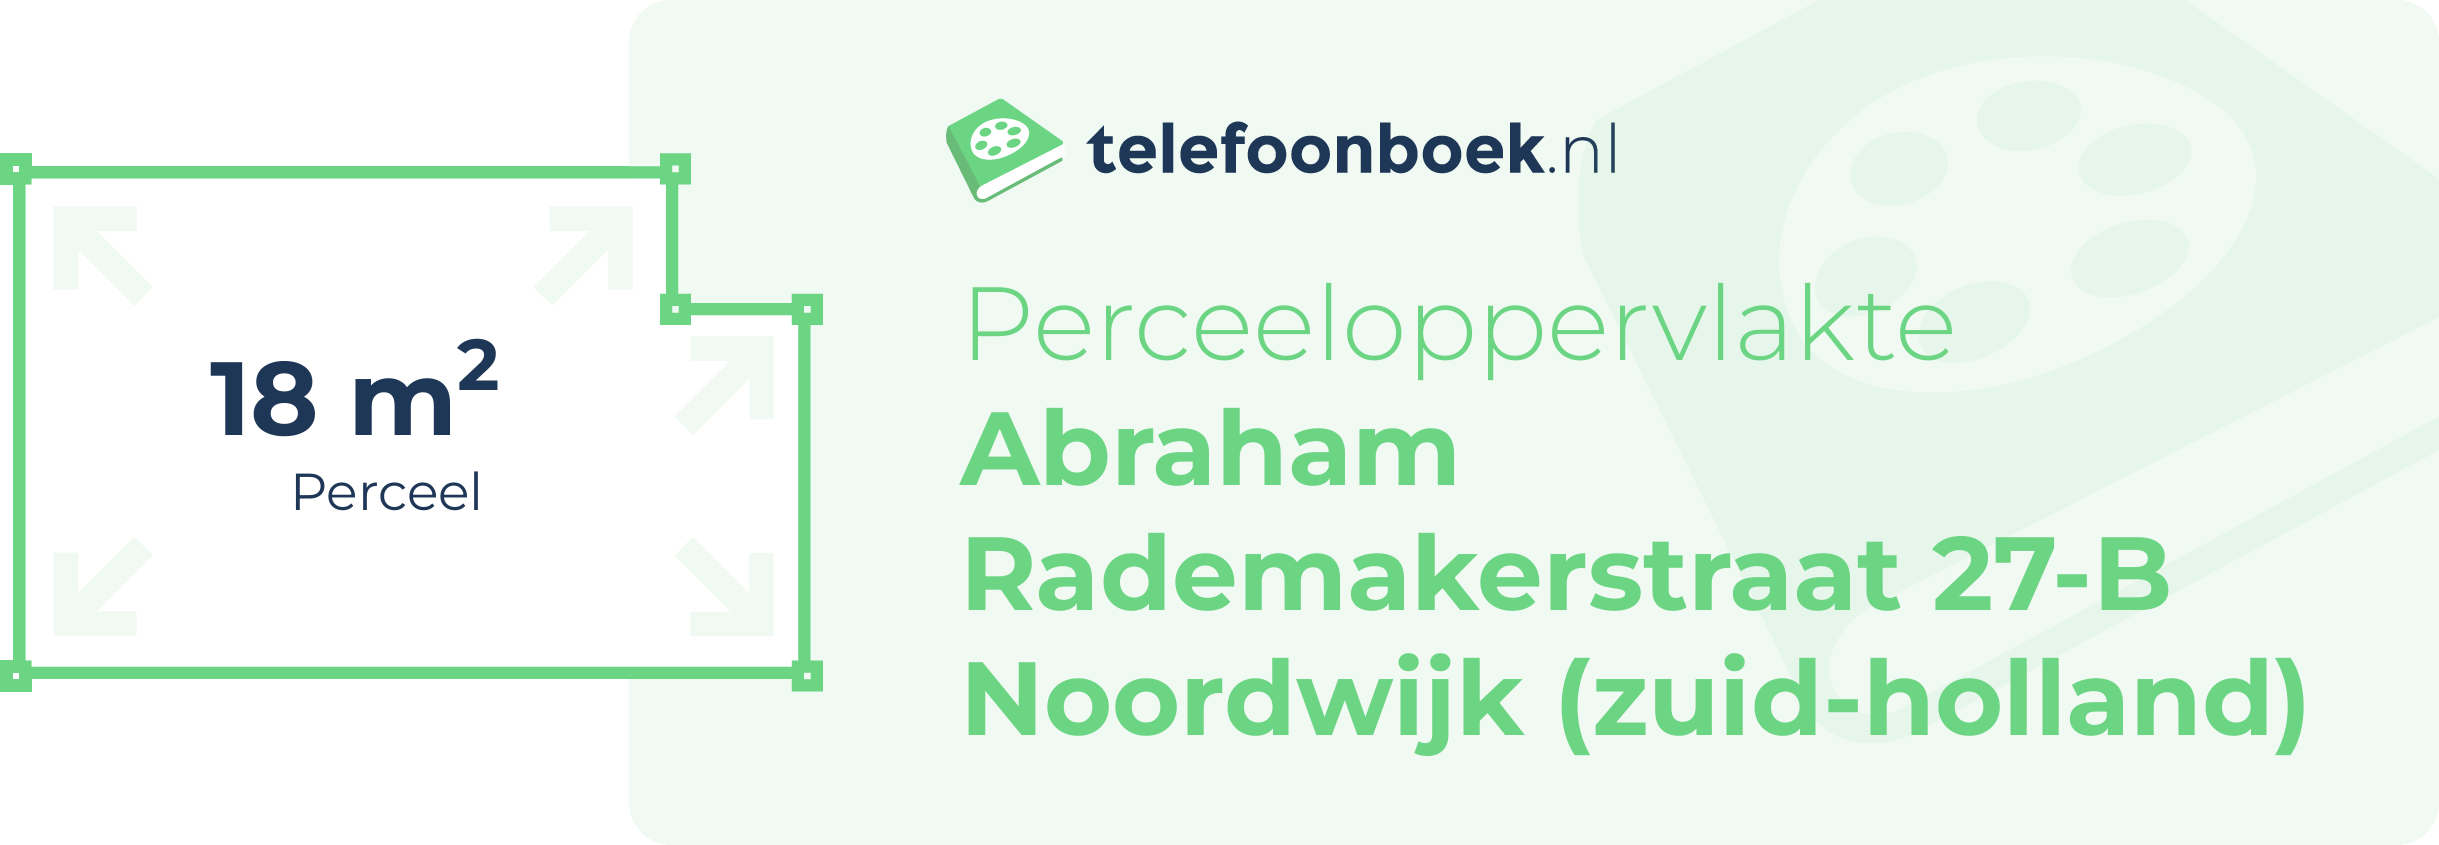 Perceeloppervlakte Abraham Rademakerstraat 27-B Noordwijk (Zuid-Holland)